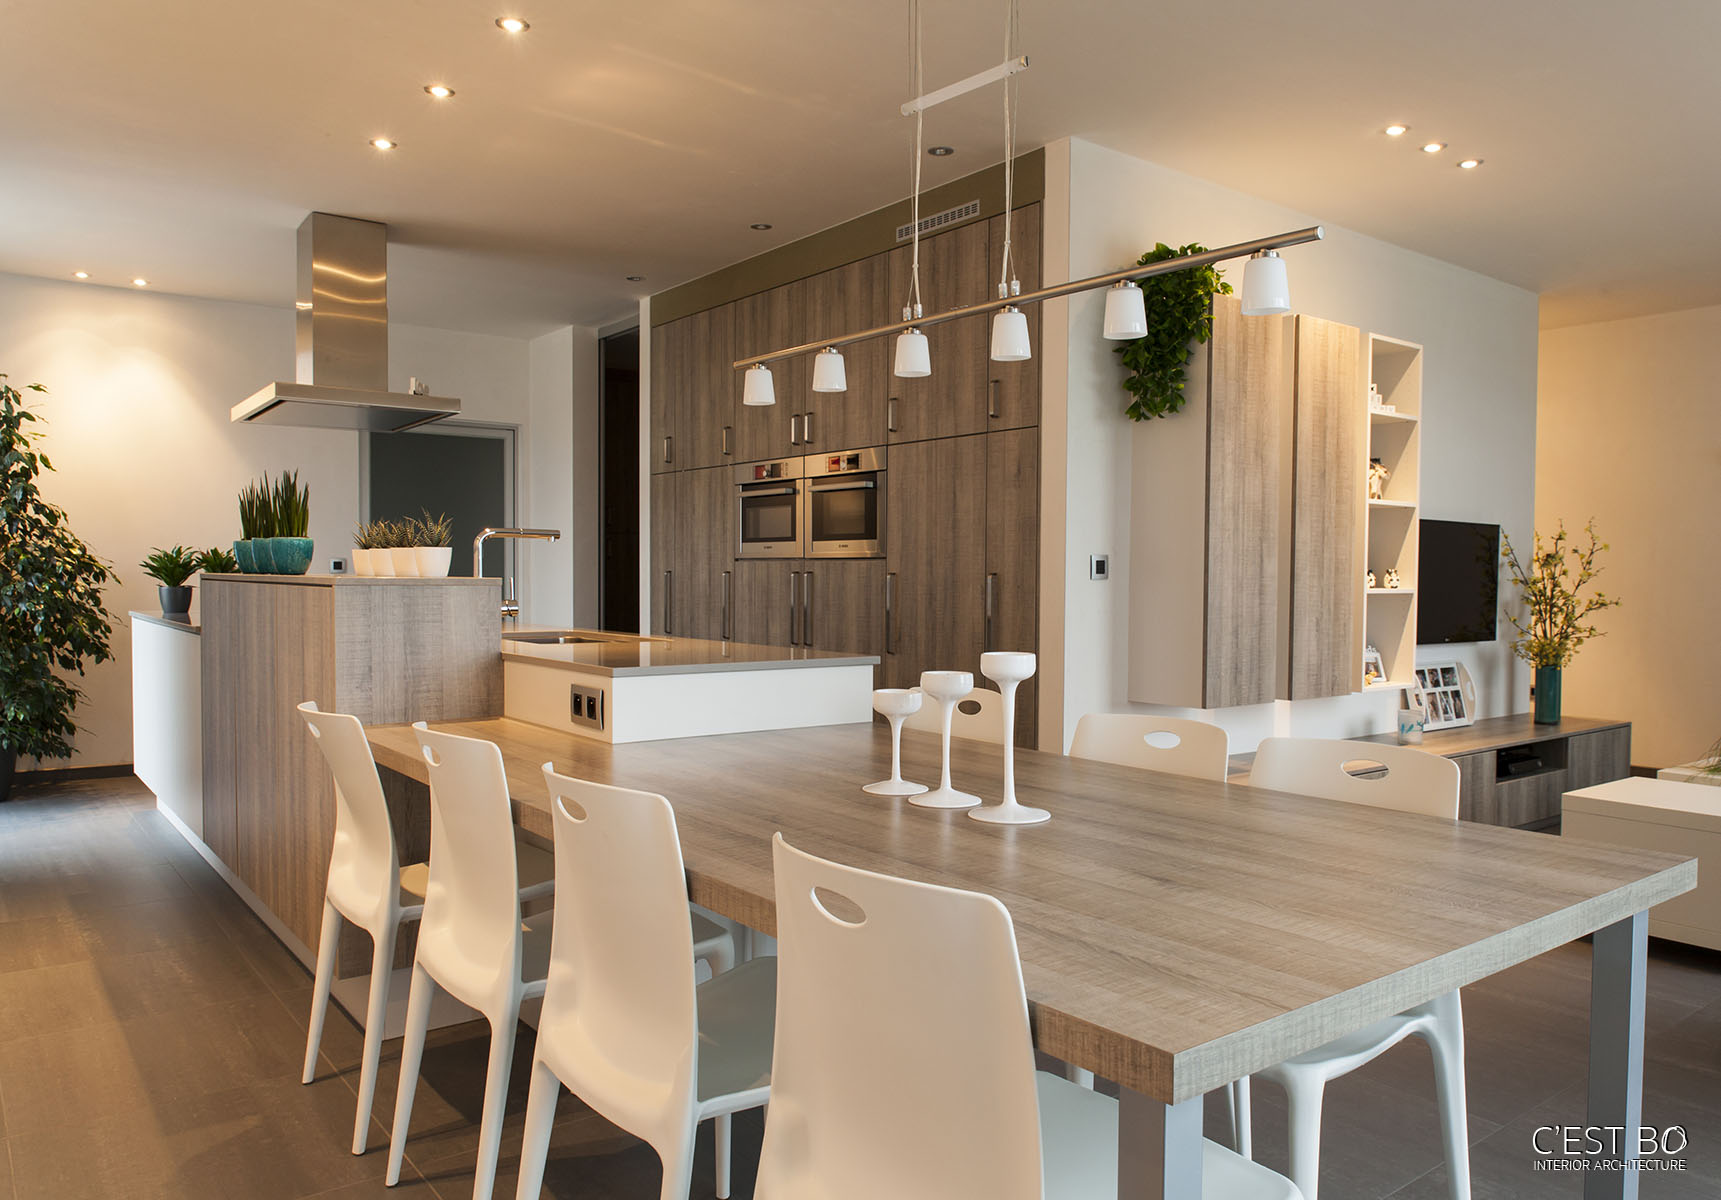 Ruimtelijke indeling Meerhout modern hout keuken leefruimte zithoek